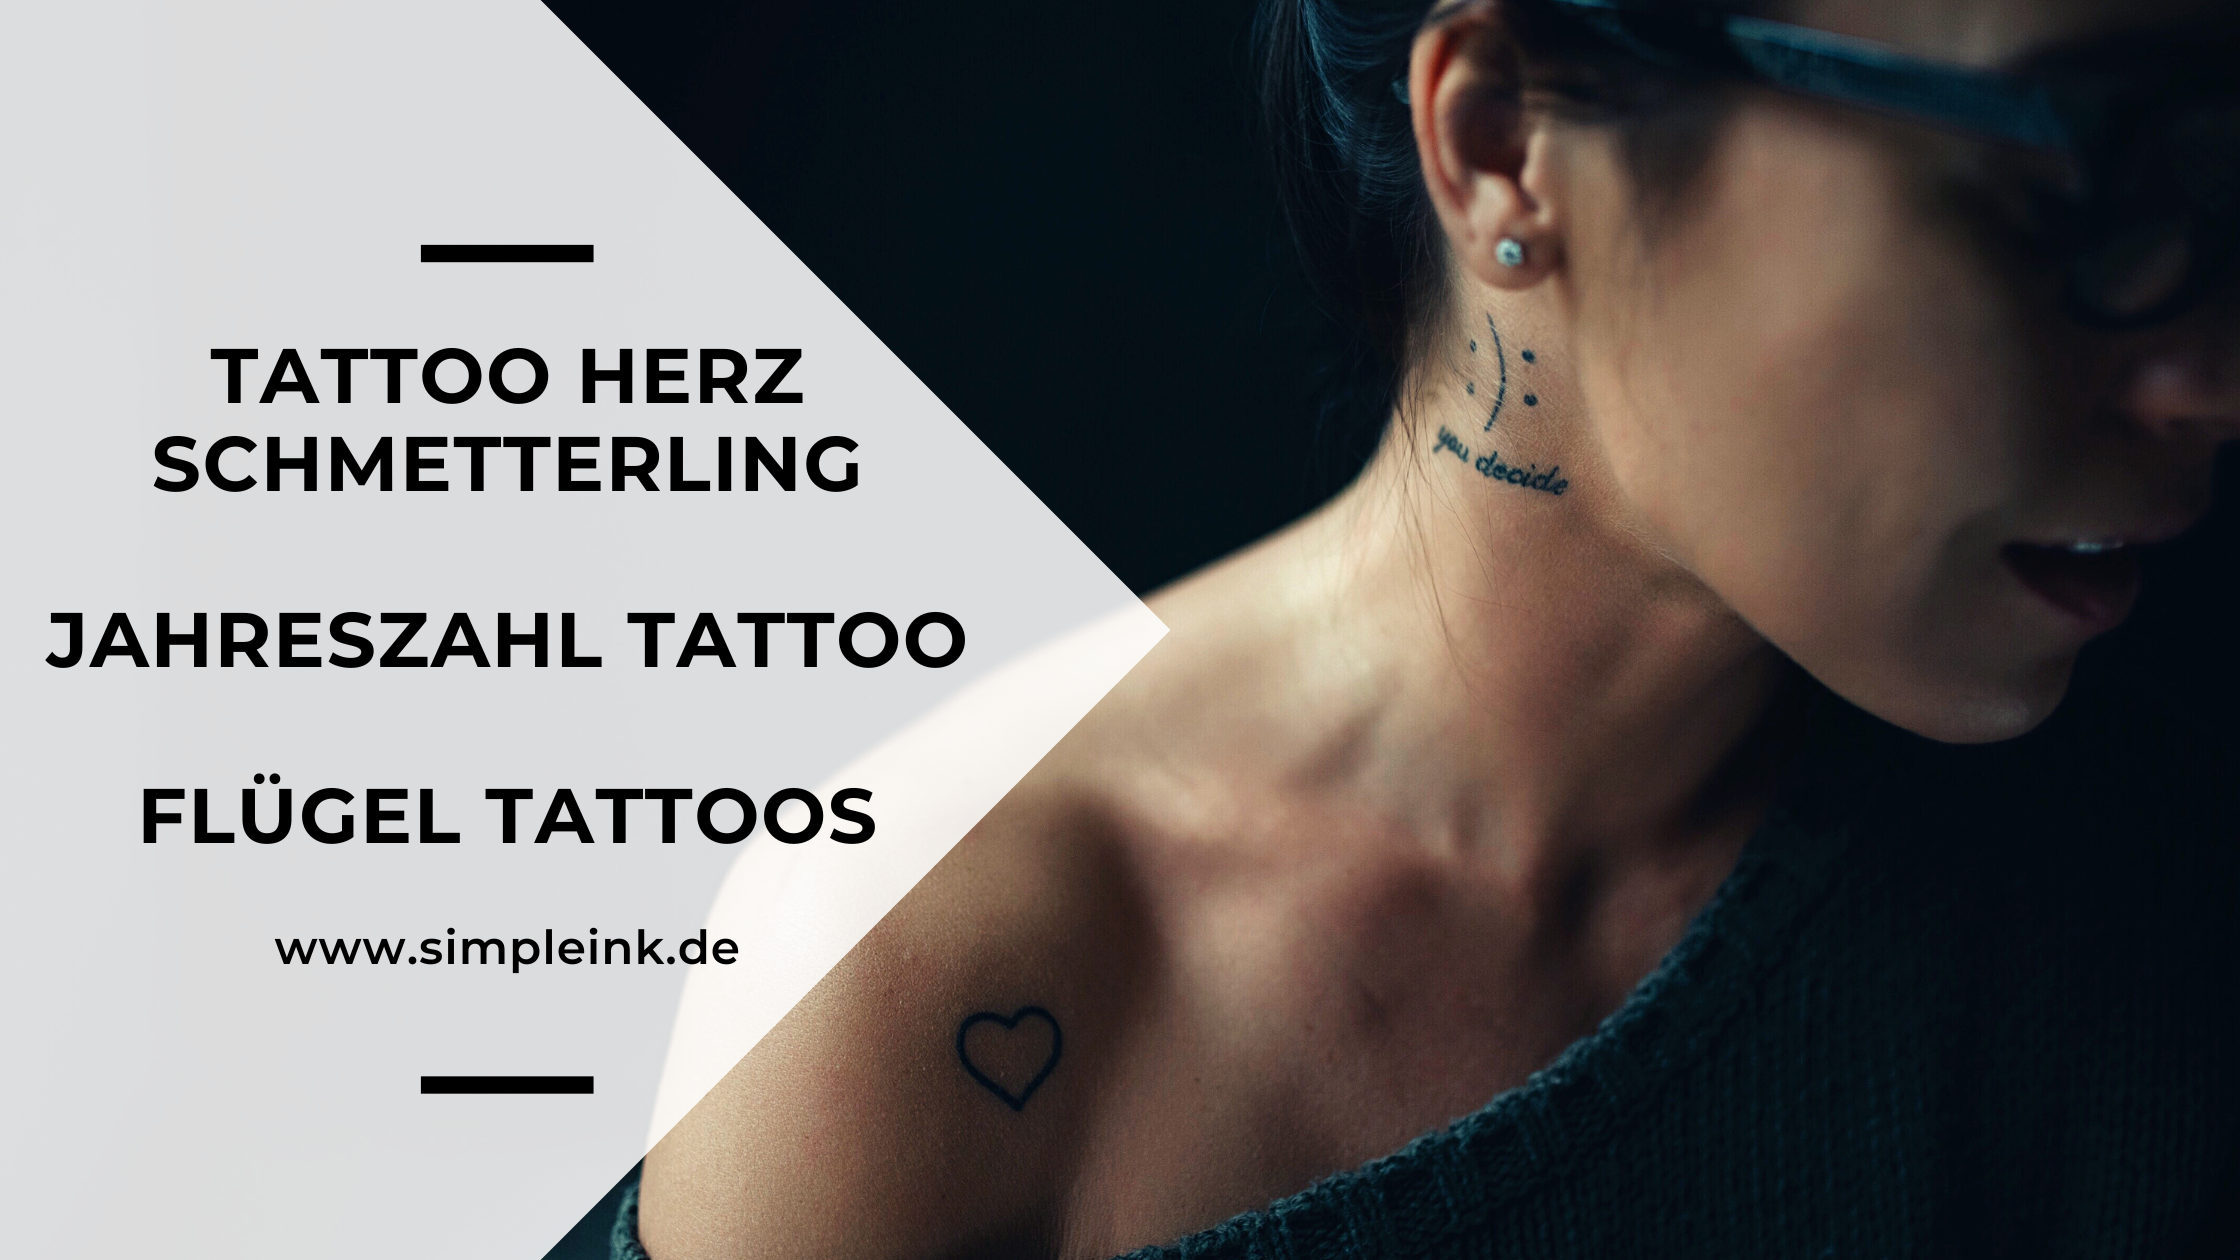 Tattoo Herz Schmetterling, Jahreszahl Tattoo, Flügel Tattoos *2022